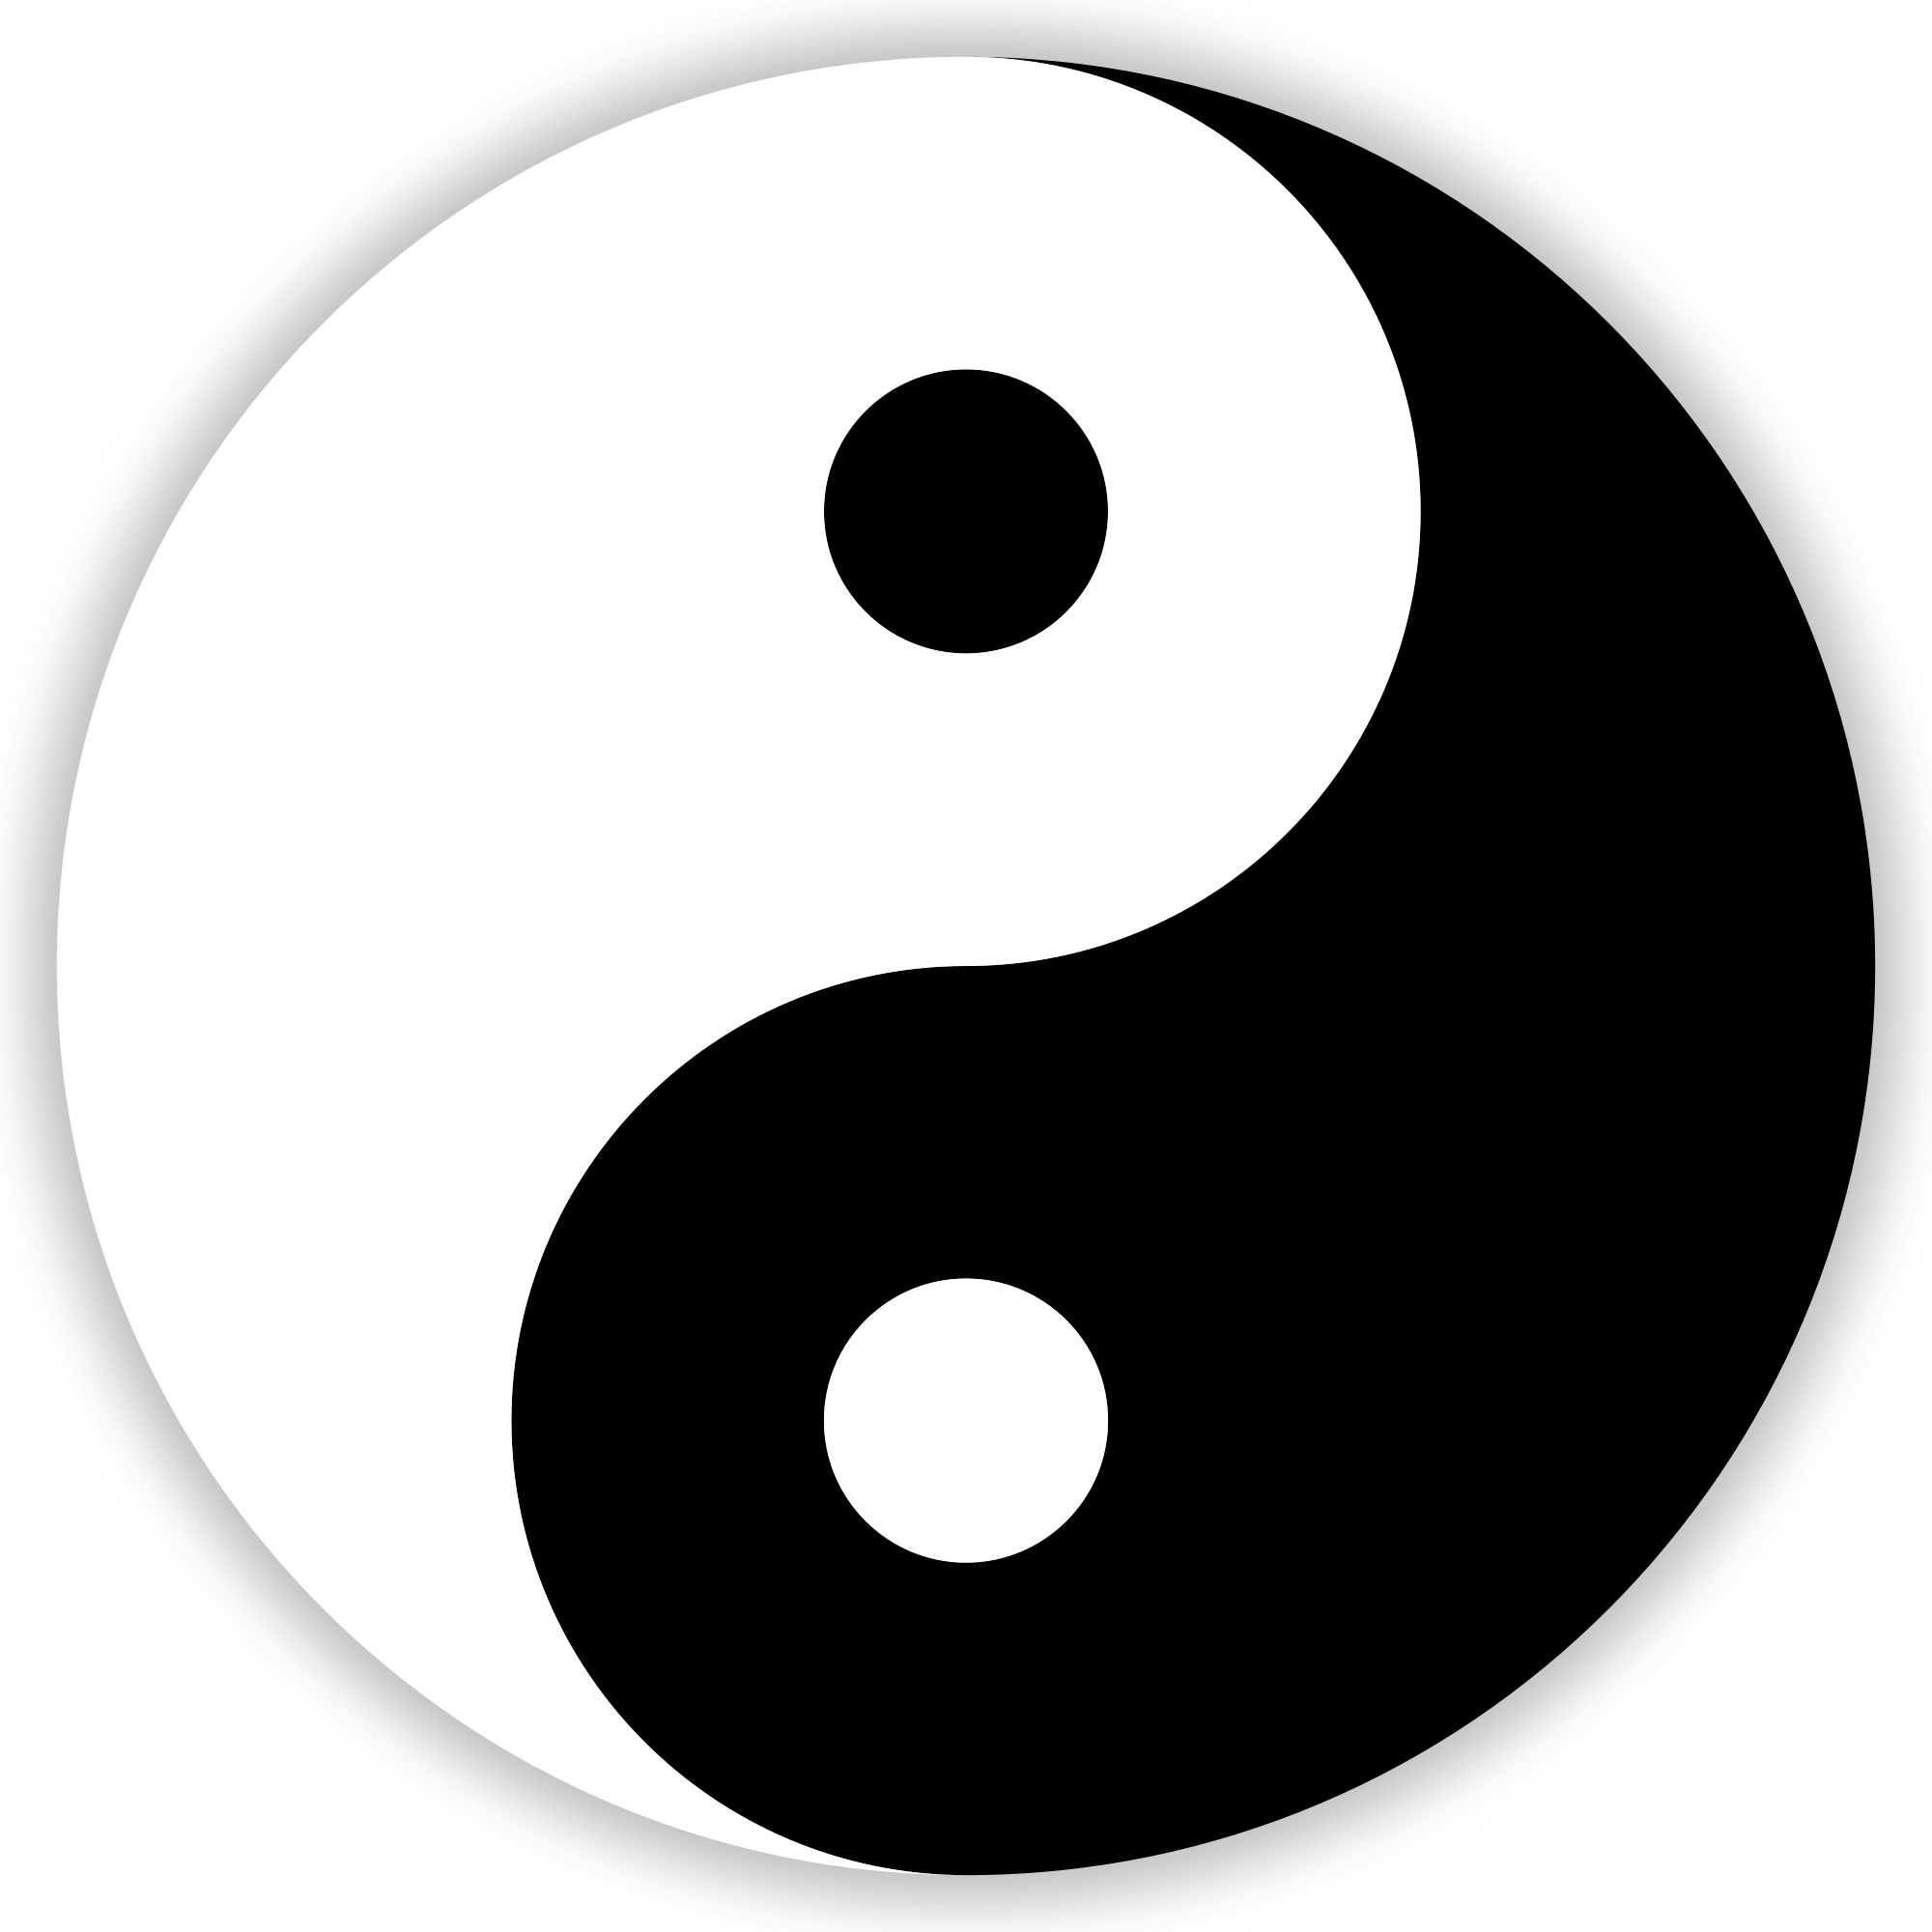 Massage Therapy - Yin And Yang Symbol (2000x2000)